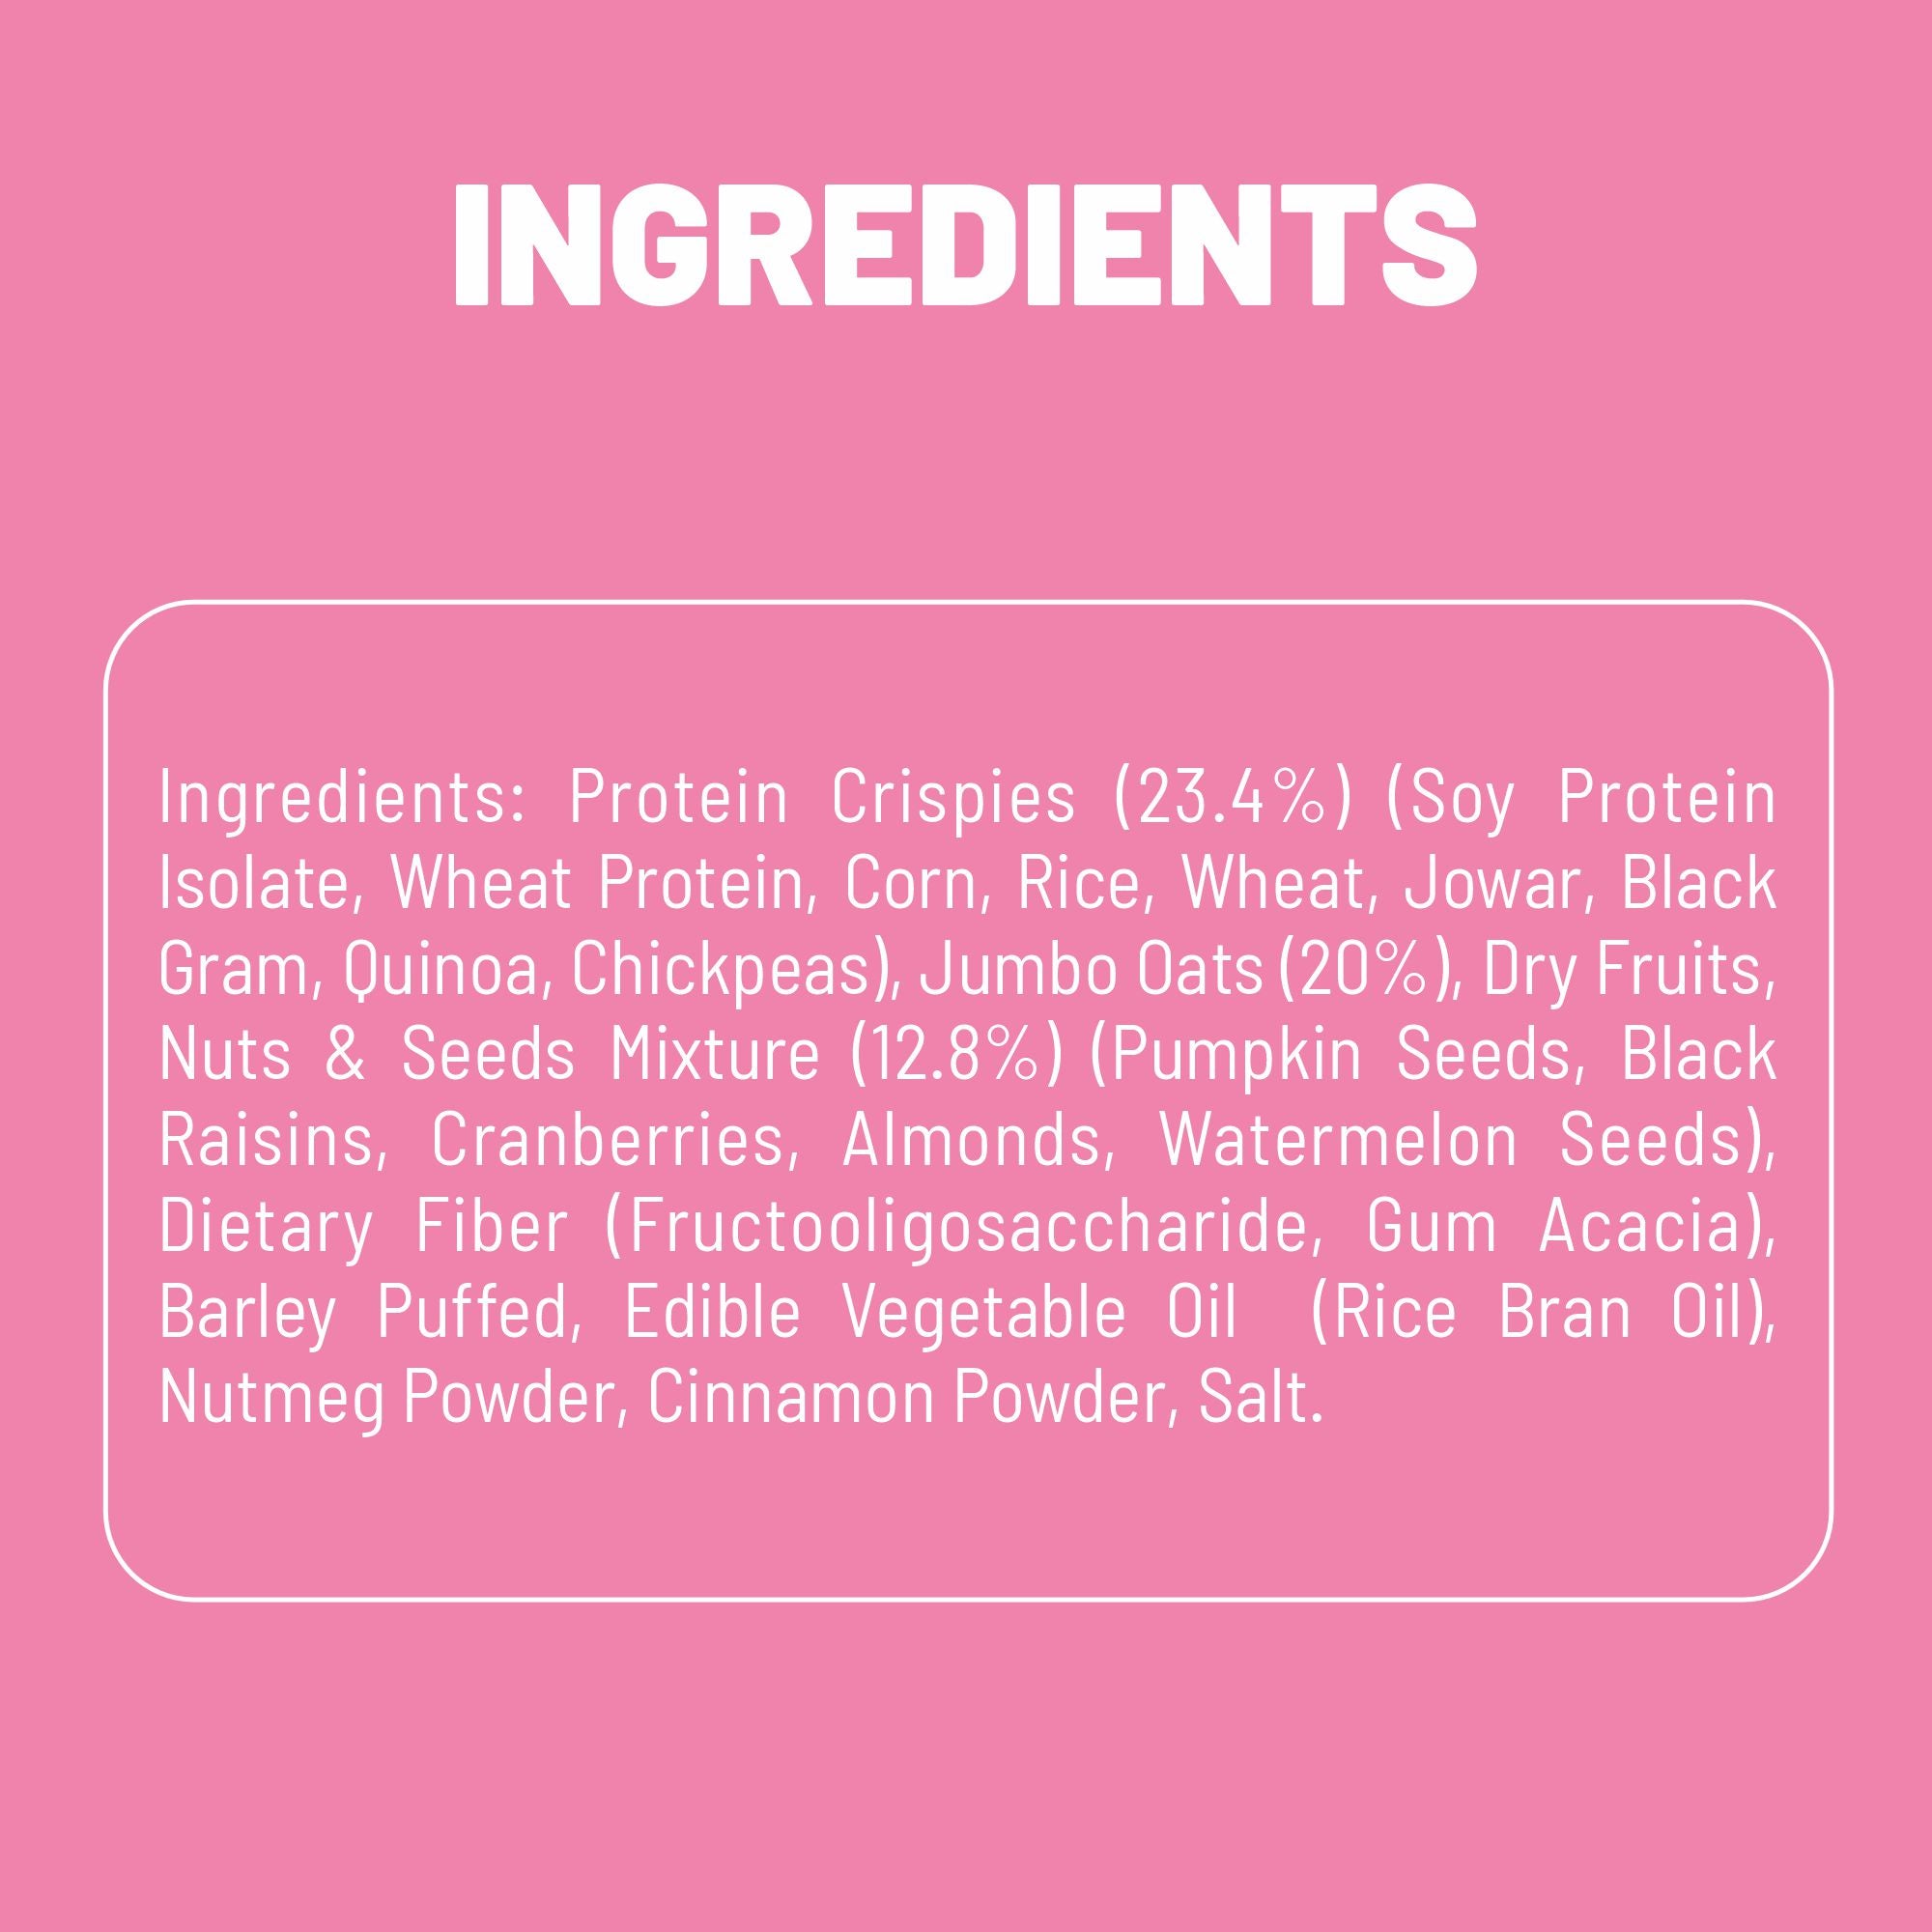 Max Protein Granola - No Added Sugar - 500g